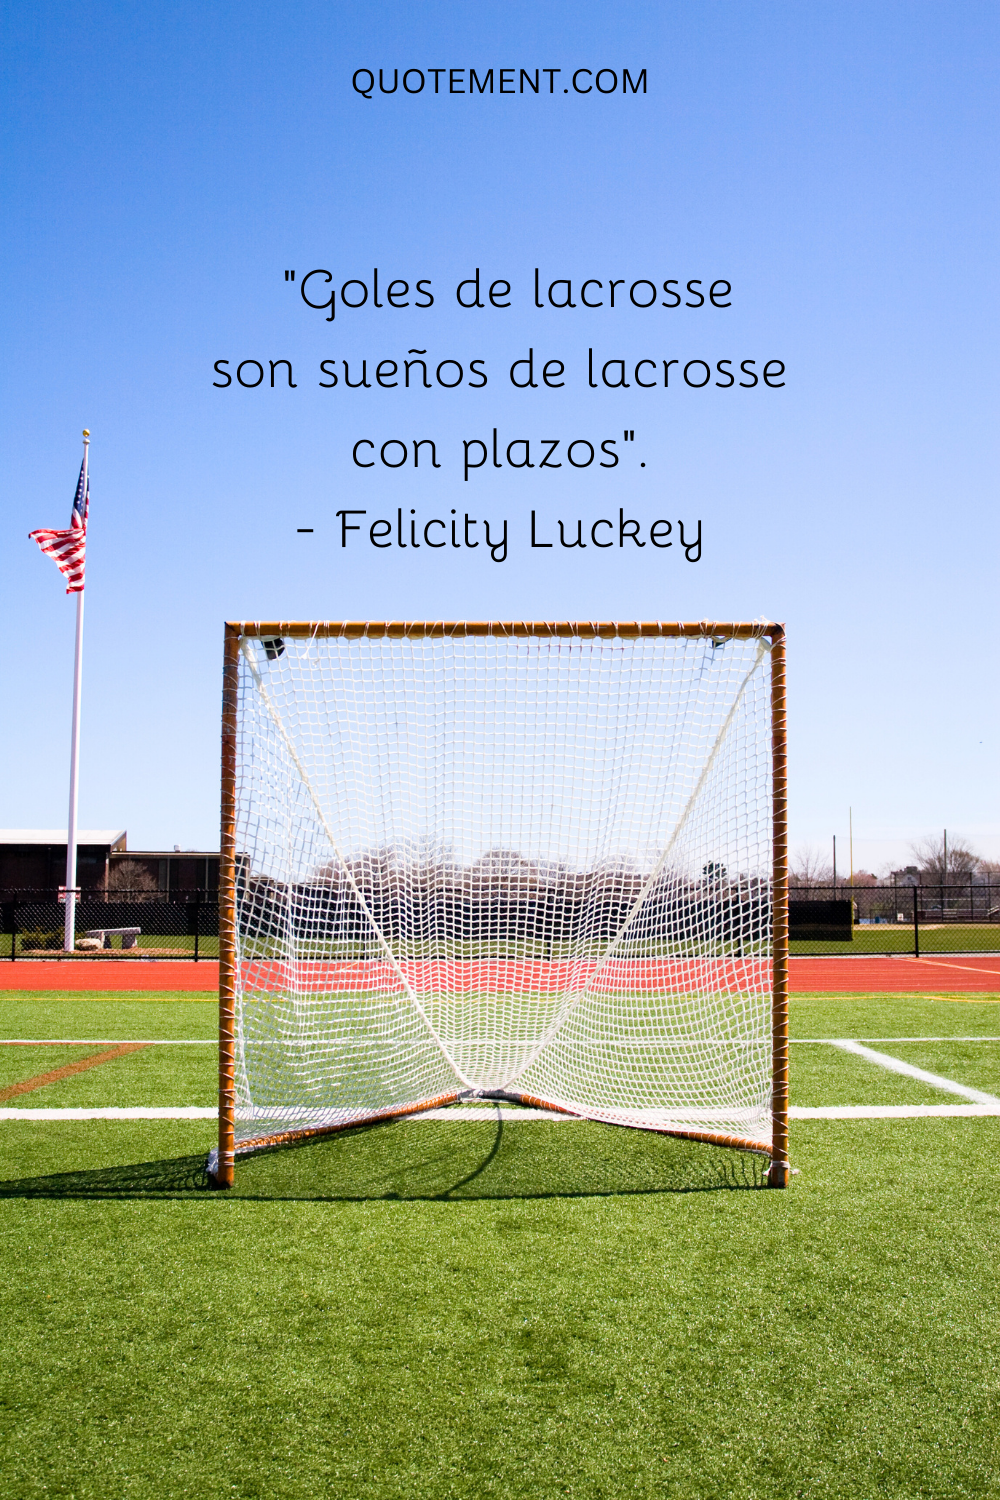 "Los goles de lacrosse son sueños de lacrosse con plazos". - Felicity Luckey